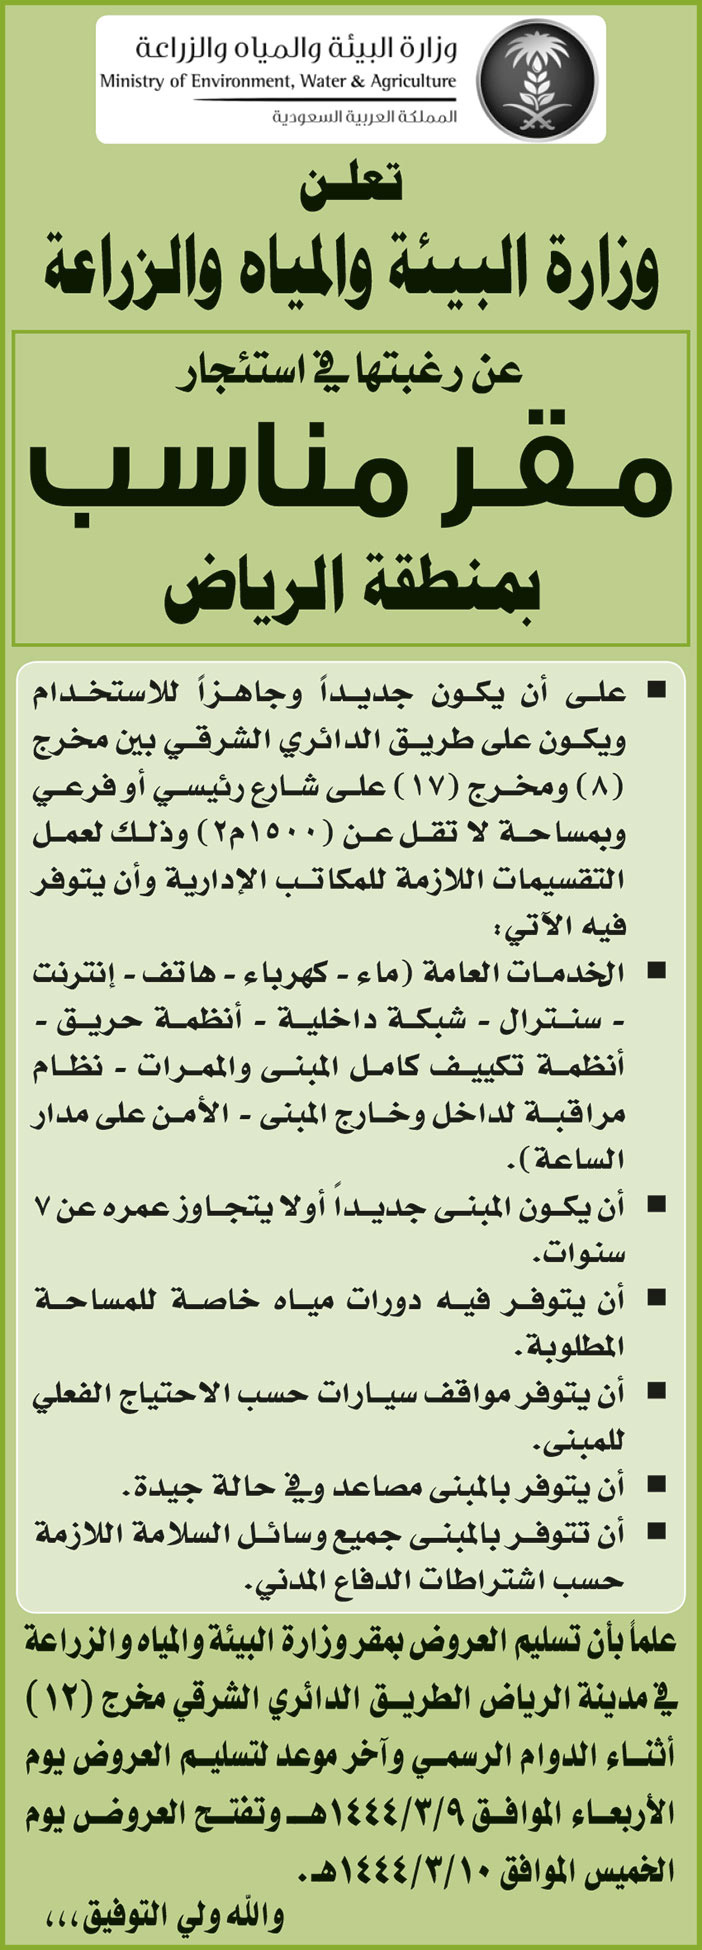 وزارة البيئة والمياه والزراعة ترغب في استئجار مقر مناسب بمنطقة الرياض 